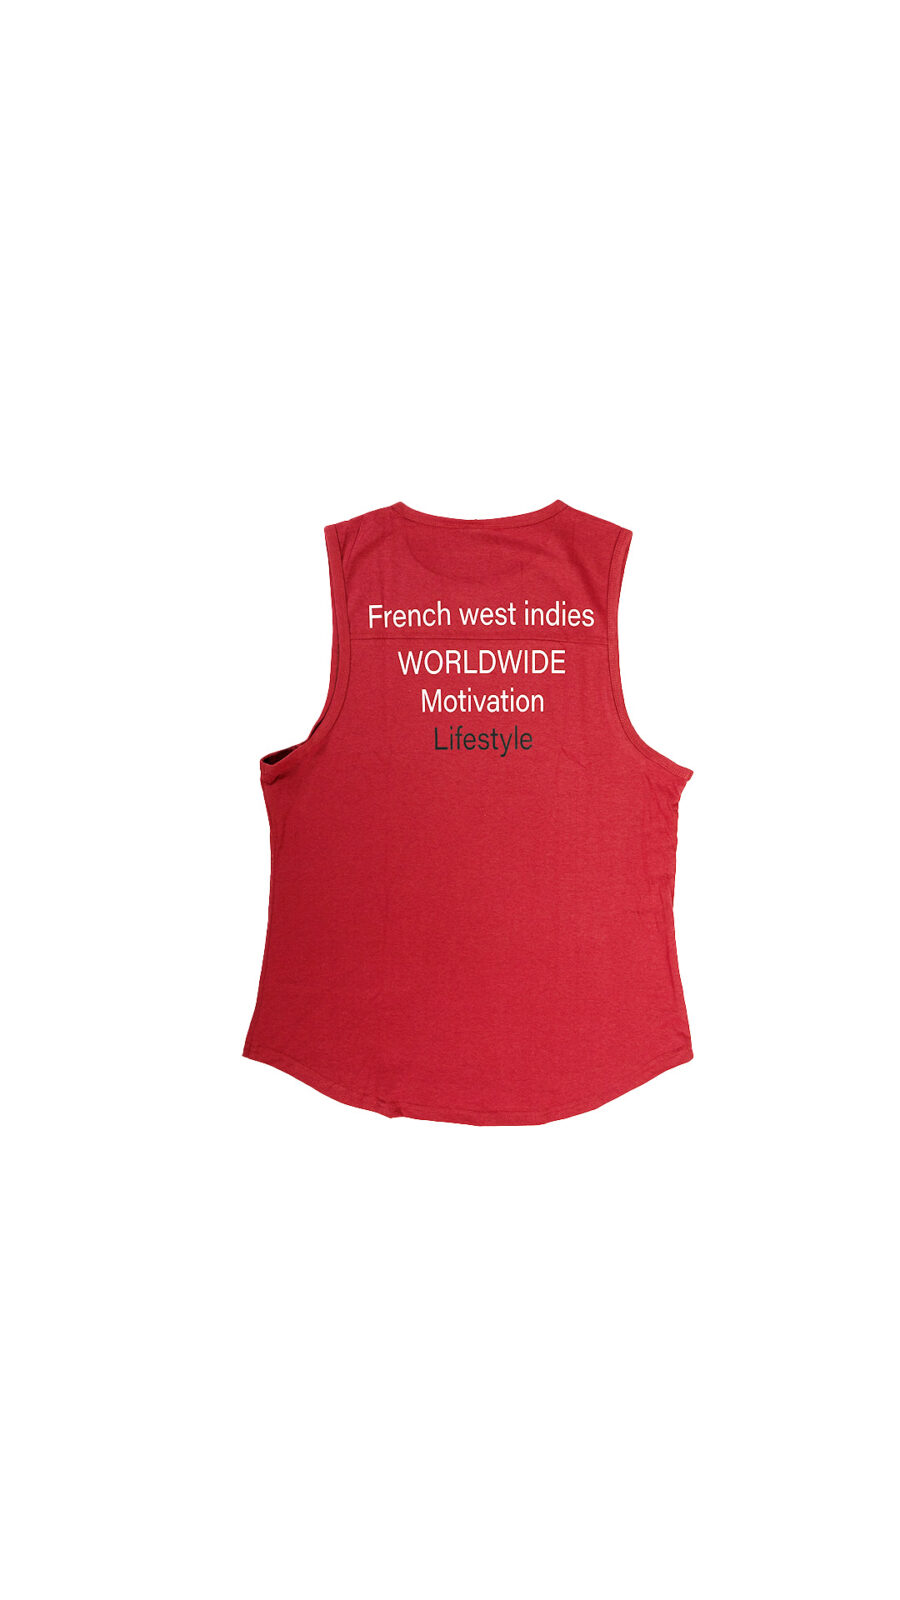 tee-shirt lifestyle homme imprimé dos rouge